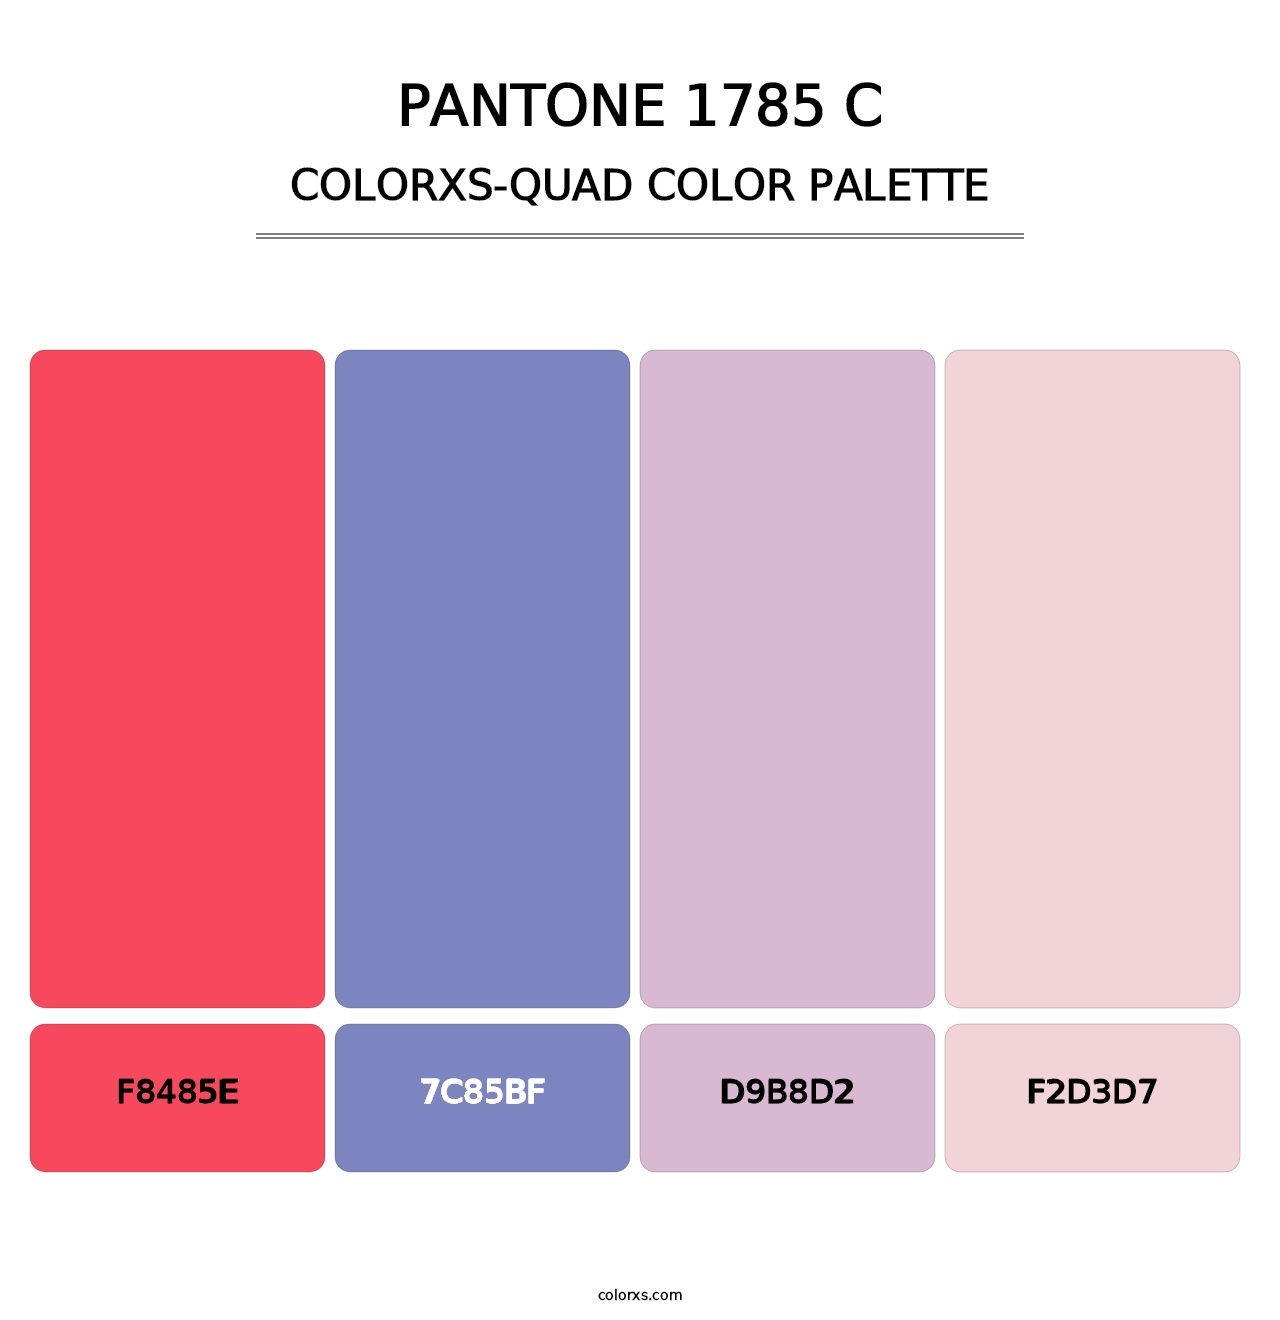 PANTONE 1785 C - Colorxs Quad Palette